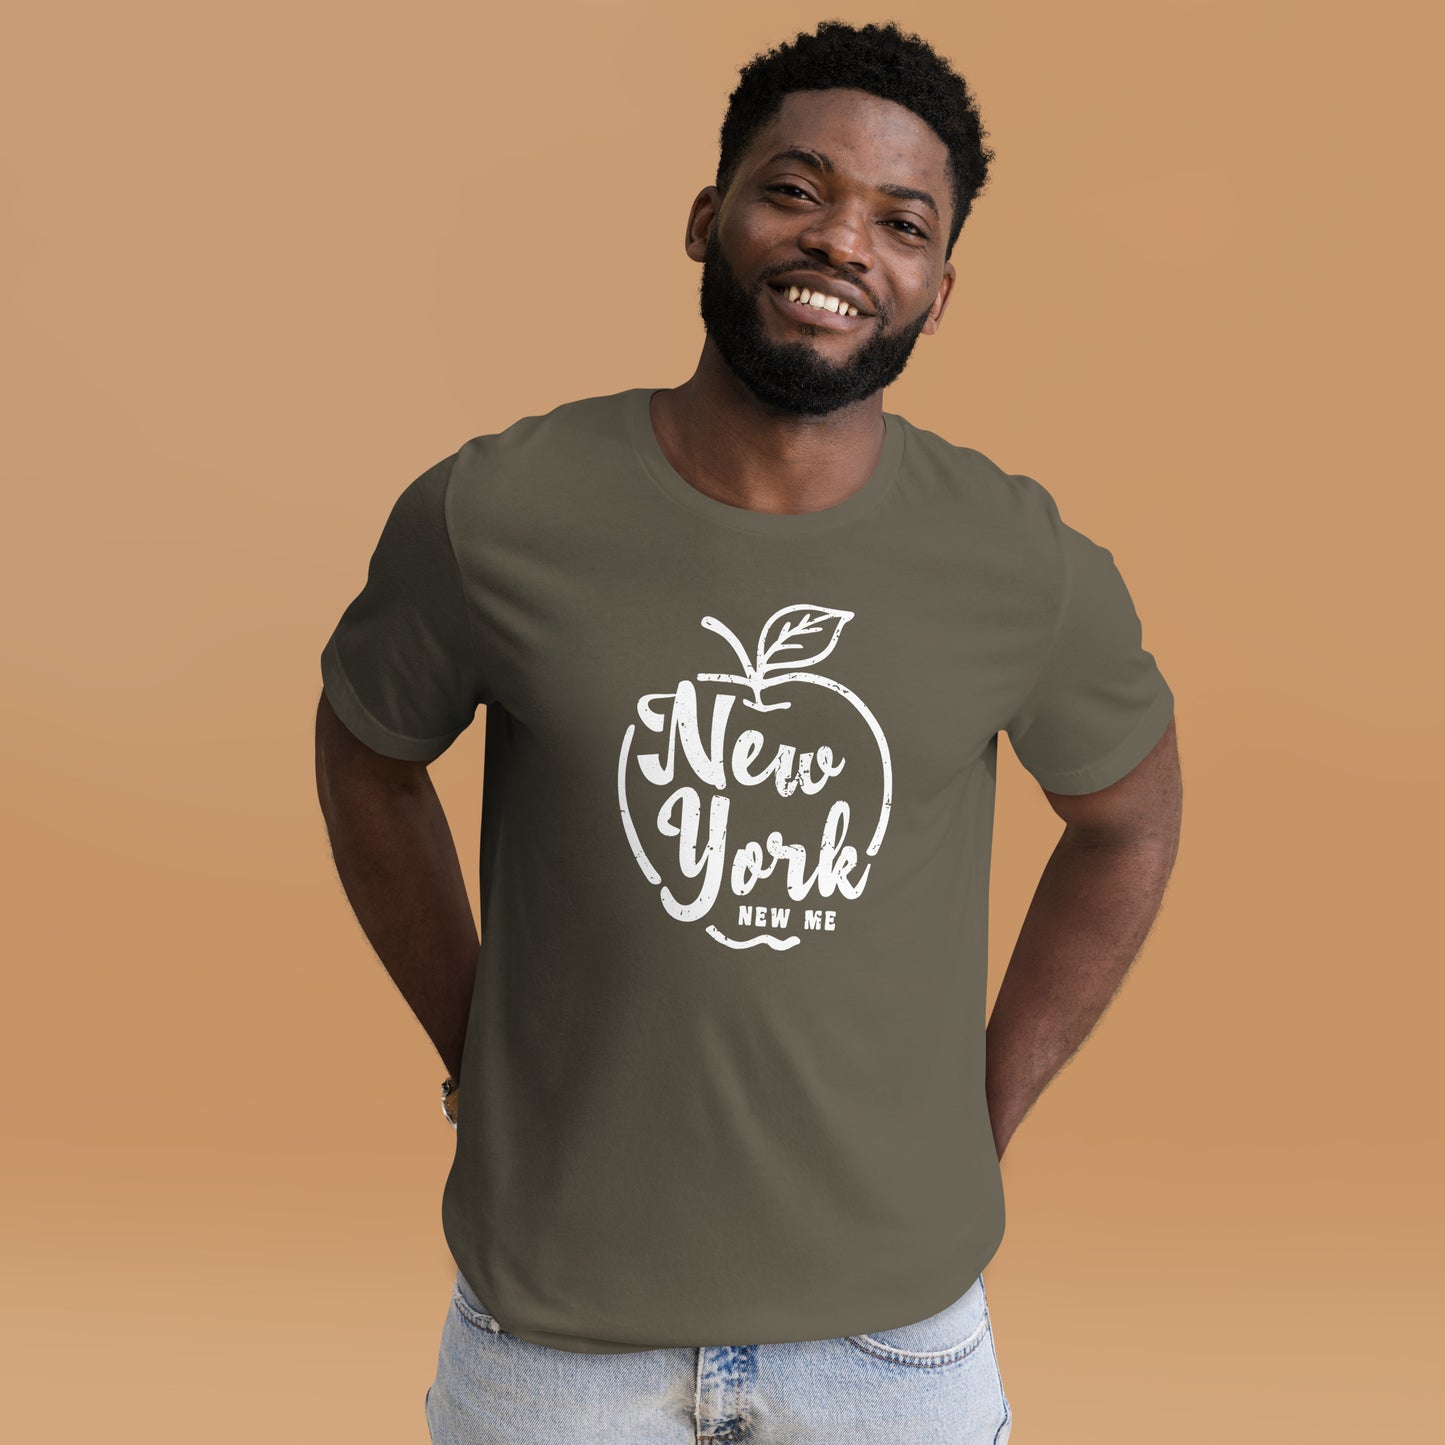 New York, New Me Unisex T-Shirt